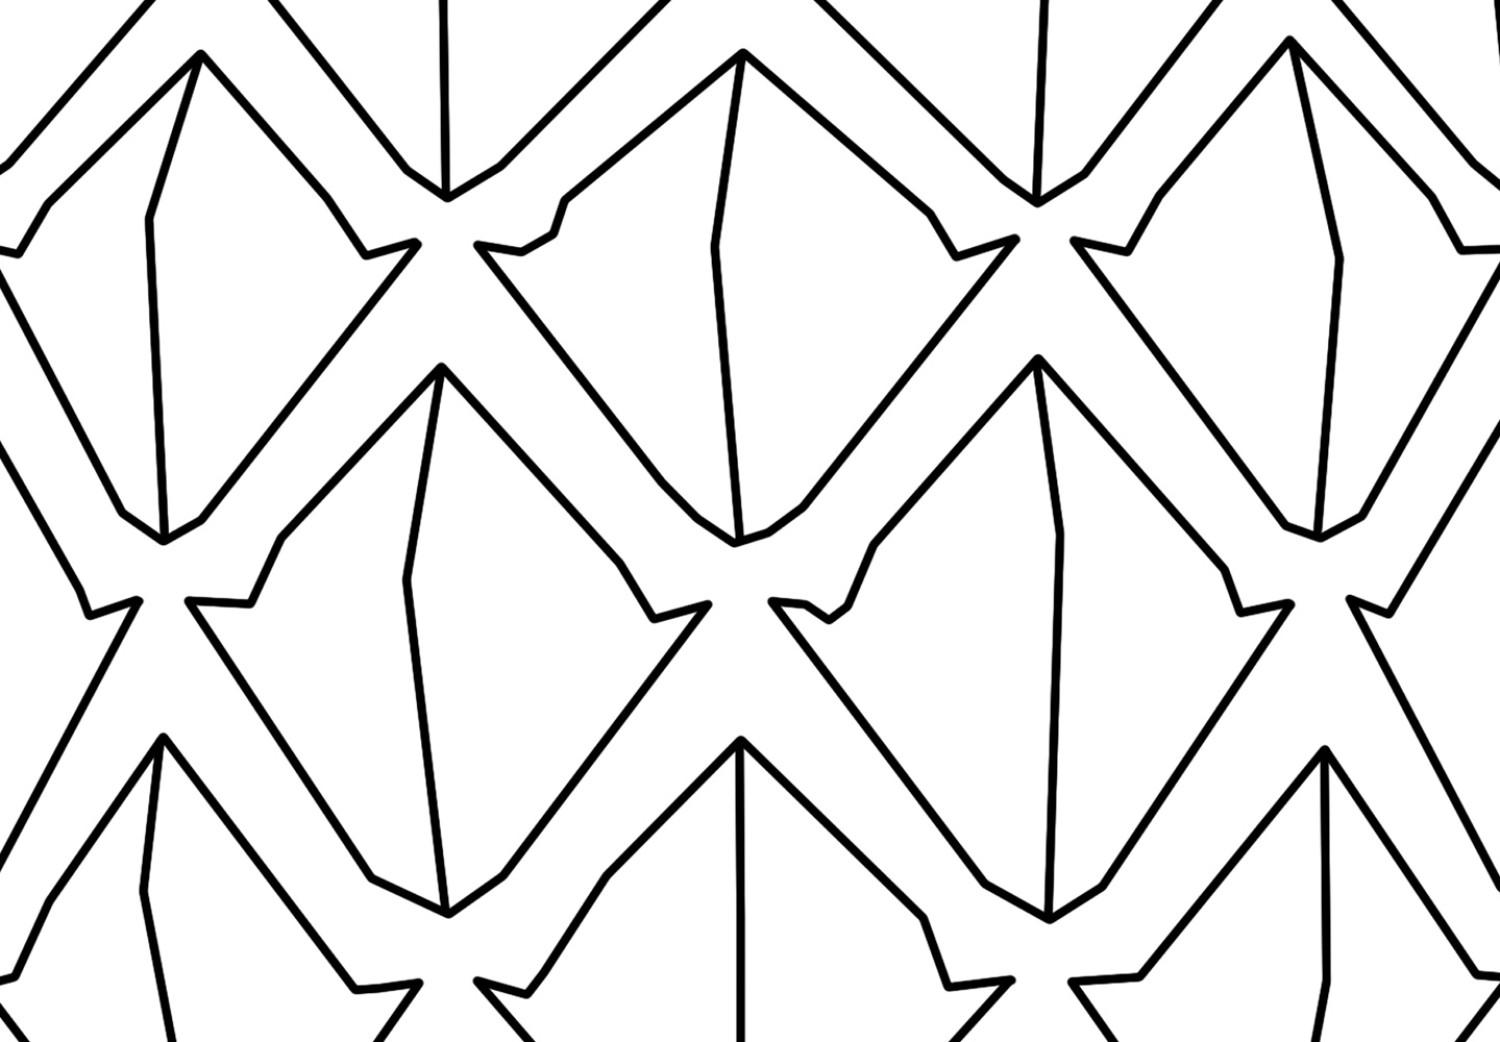 Cuadro Contornos negros de una piña - dibujo minimalista sobre fondo blanco